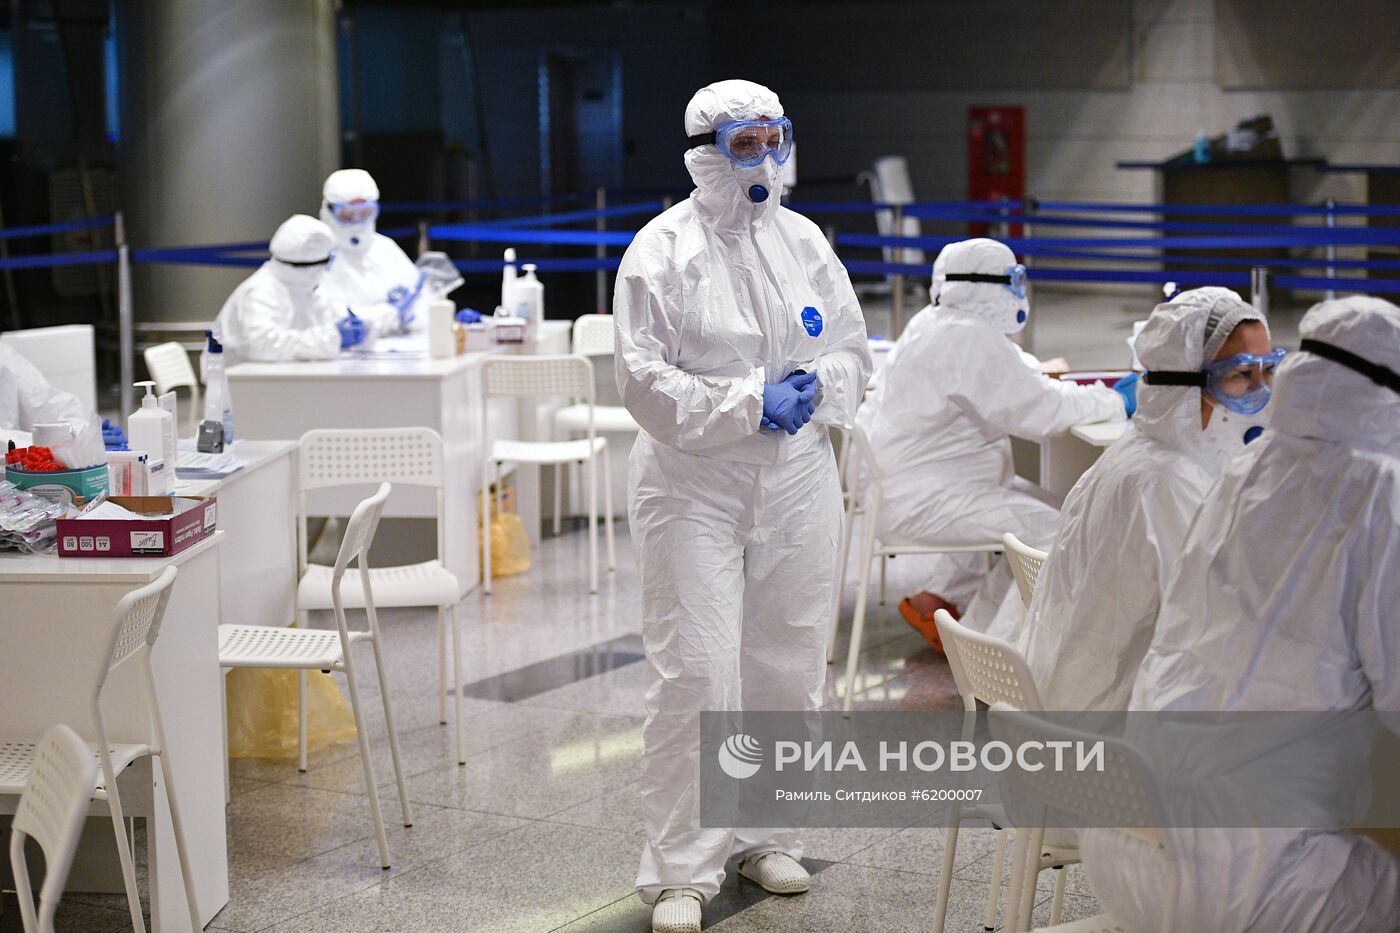 Усиление санитарного контроля в аэропорту Внуково в связи с коронавирусом